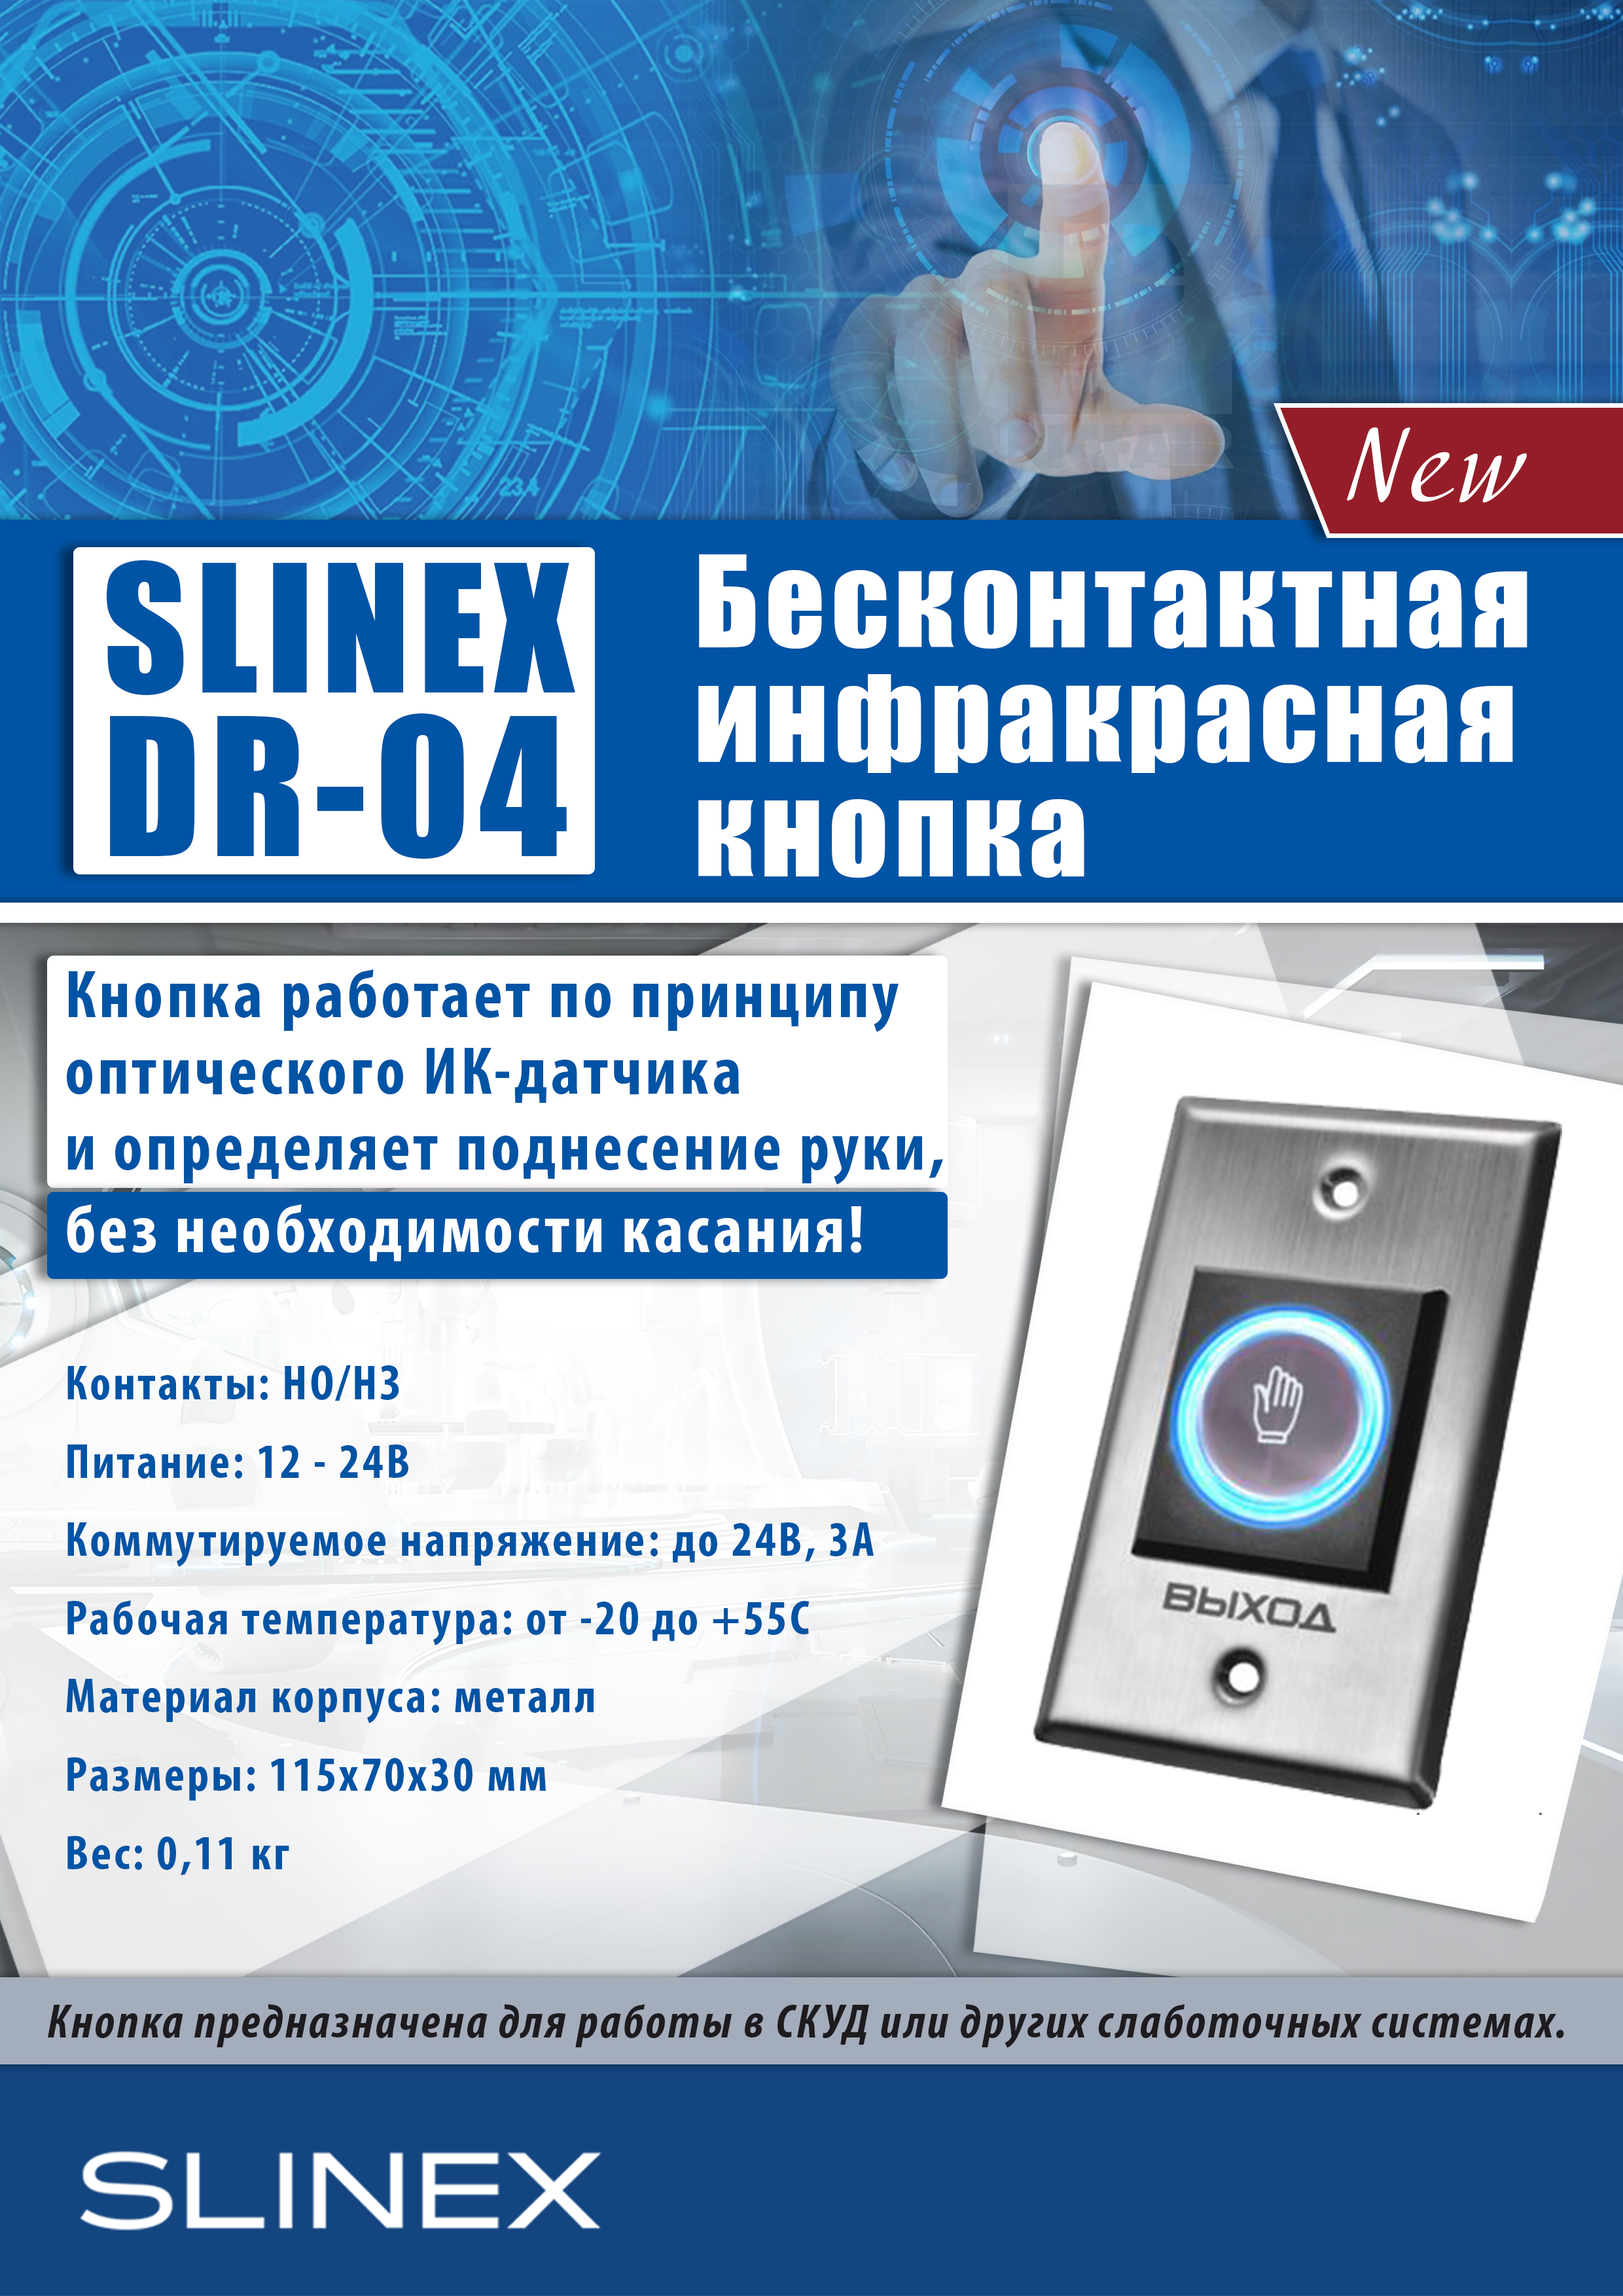 Slinex DR-04 – новая бесконтактная кнопка выхода